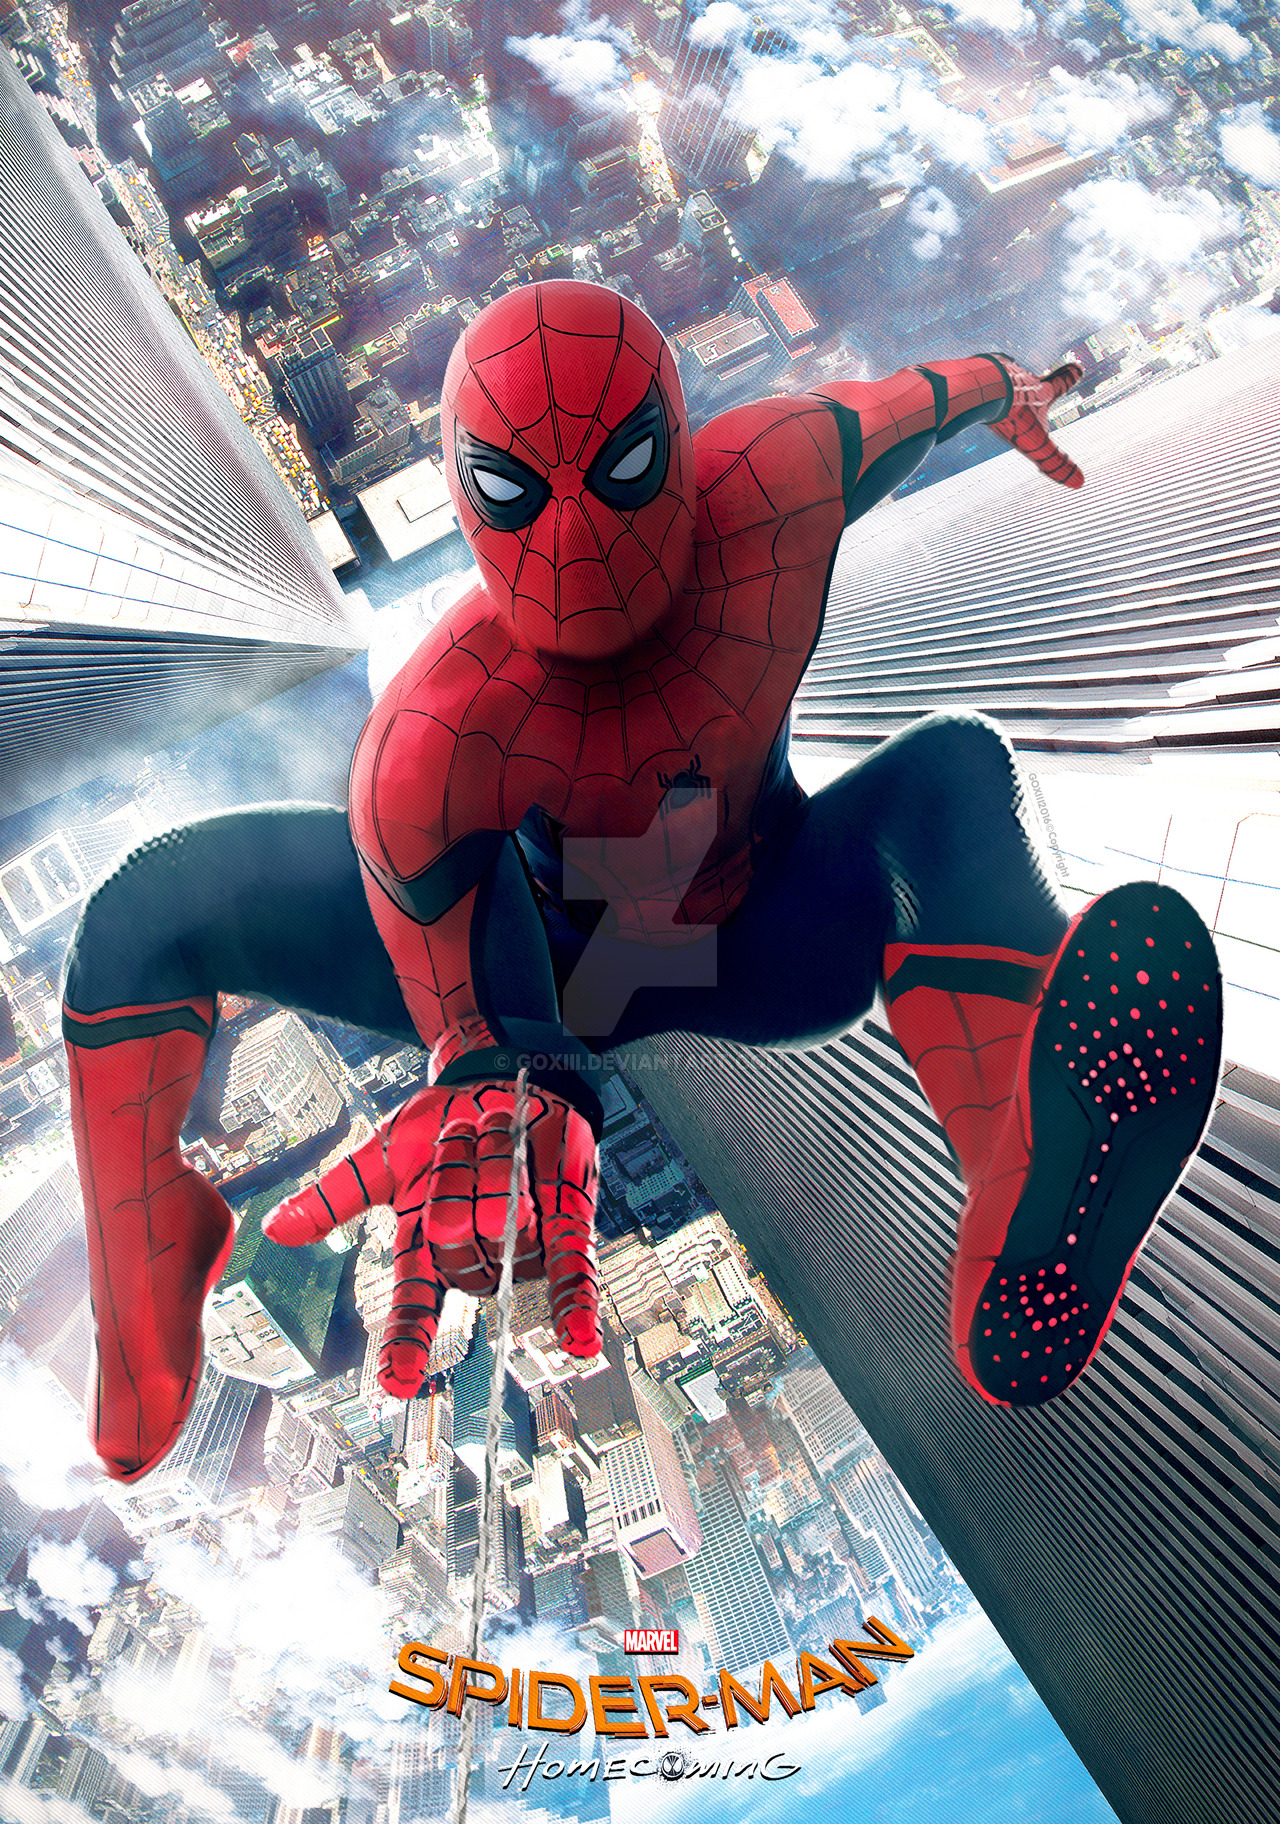 45+] Wallpaper Spider-Man Homecoming Still - WallpaperSafari